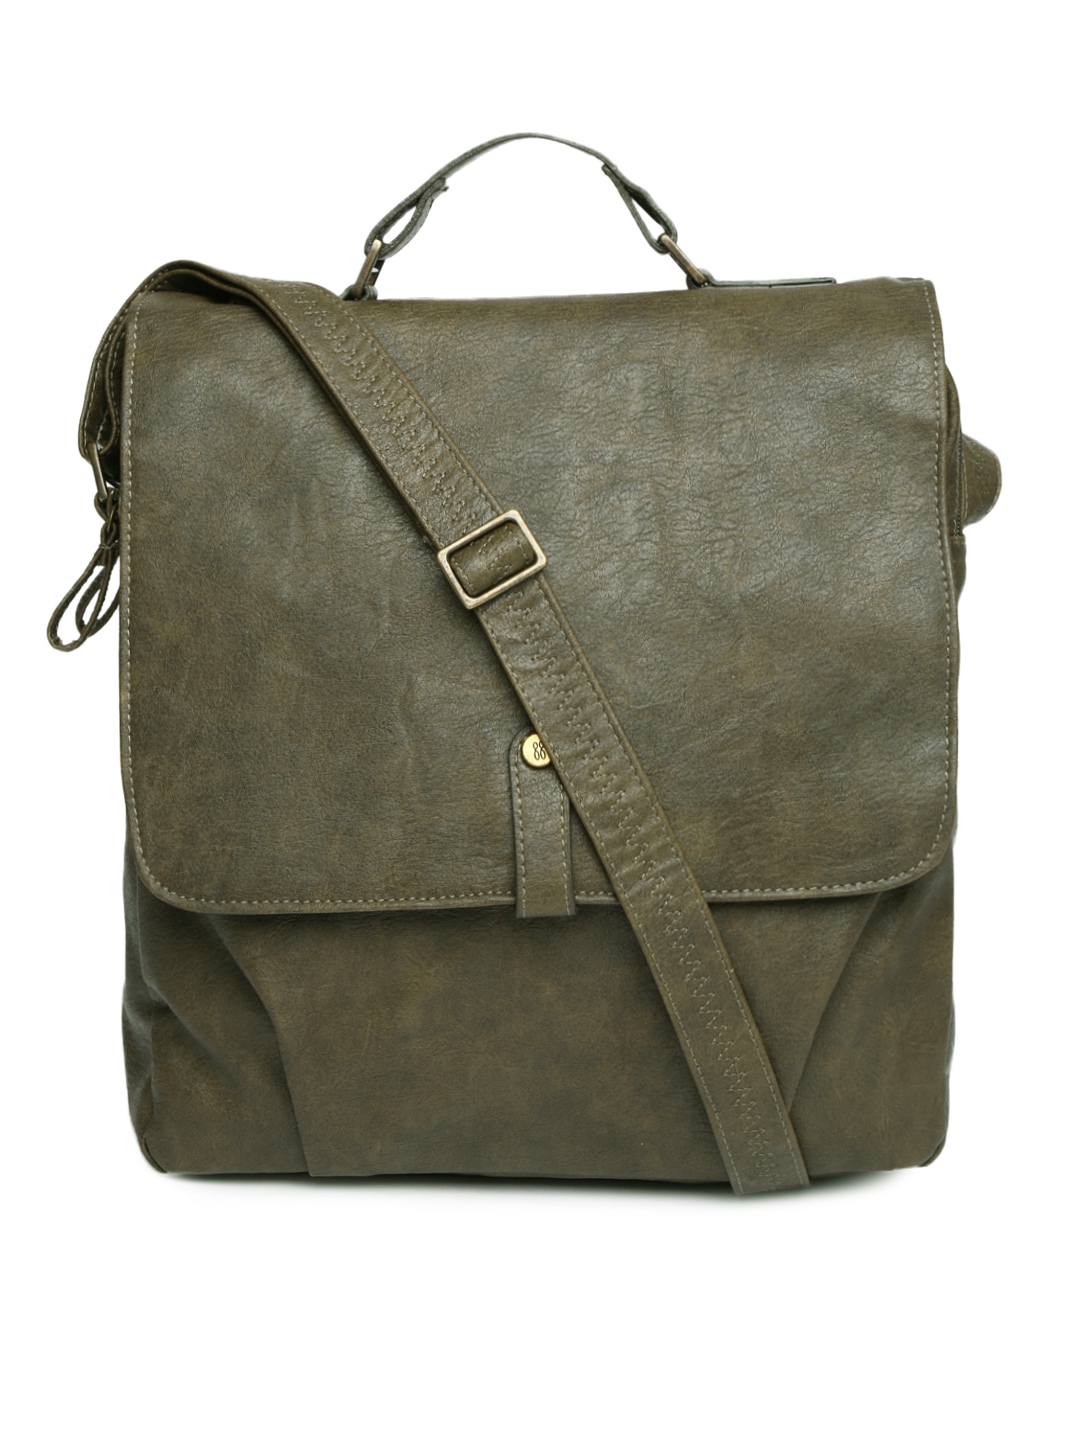 Myntra Baggit Olive Green Sling Bag 783770 | Buy Myntra Baggit Handbags at best price online ...